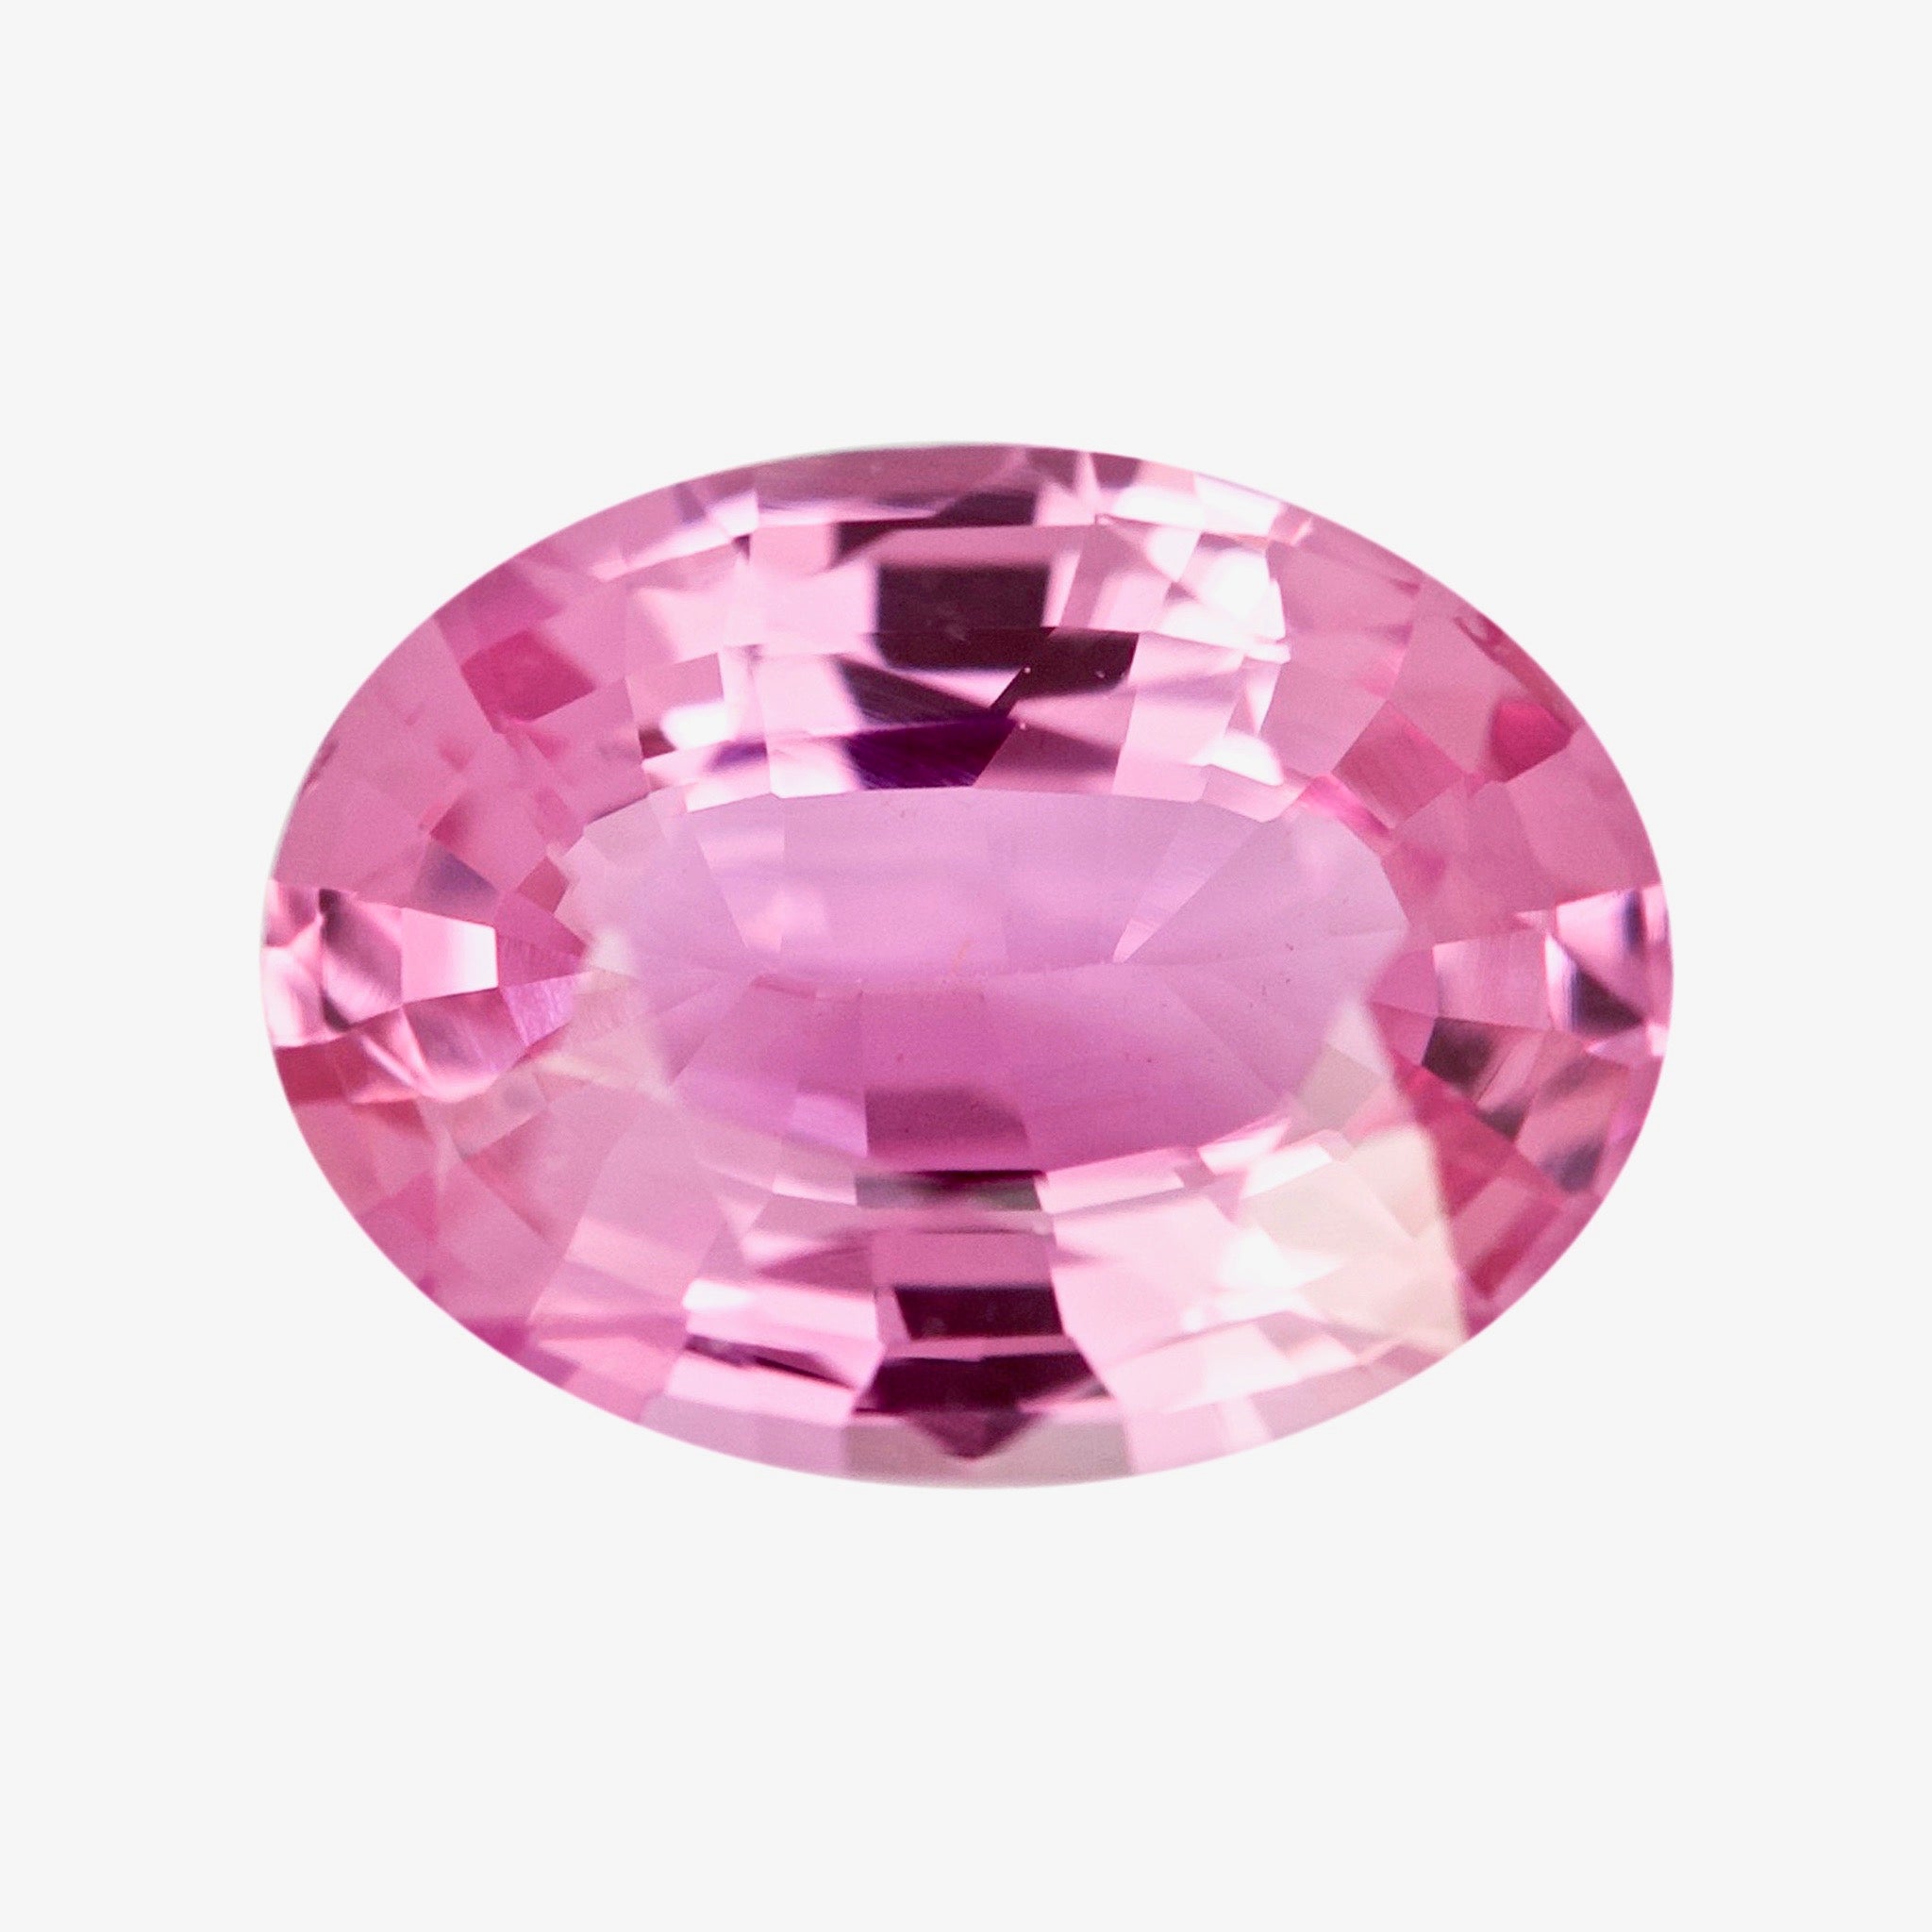 Calleras Stone 1.0 con 3 Orificios Pink (Par)